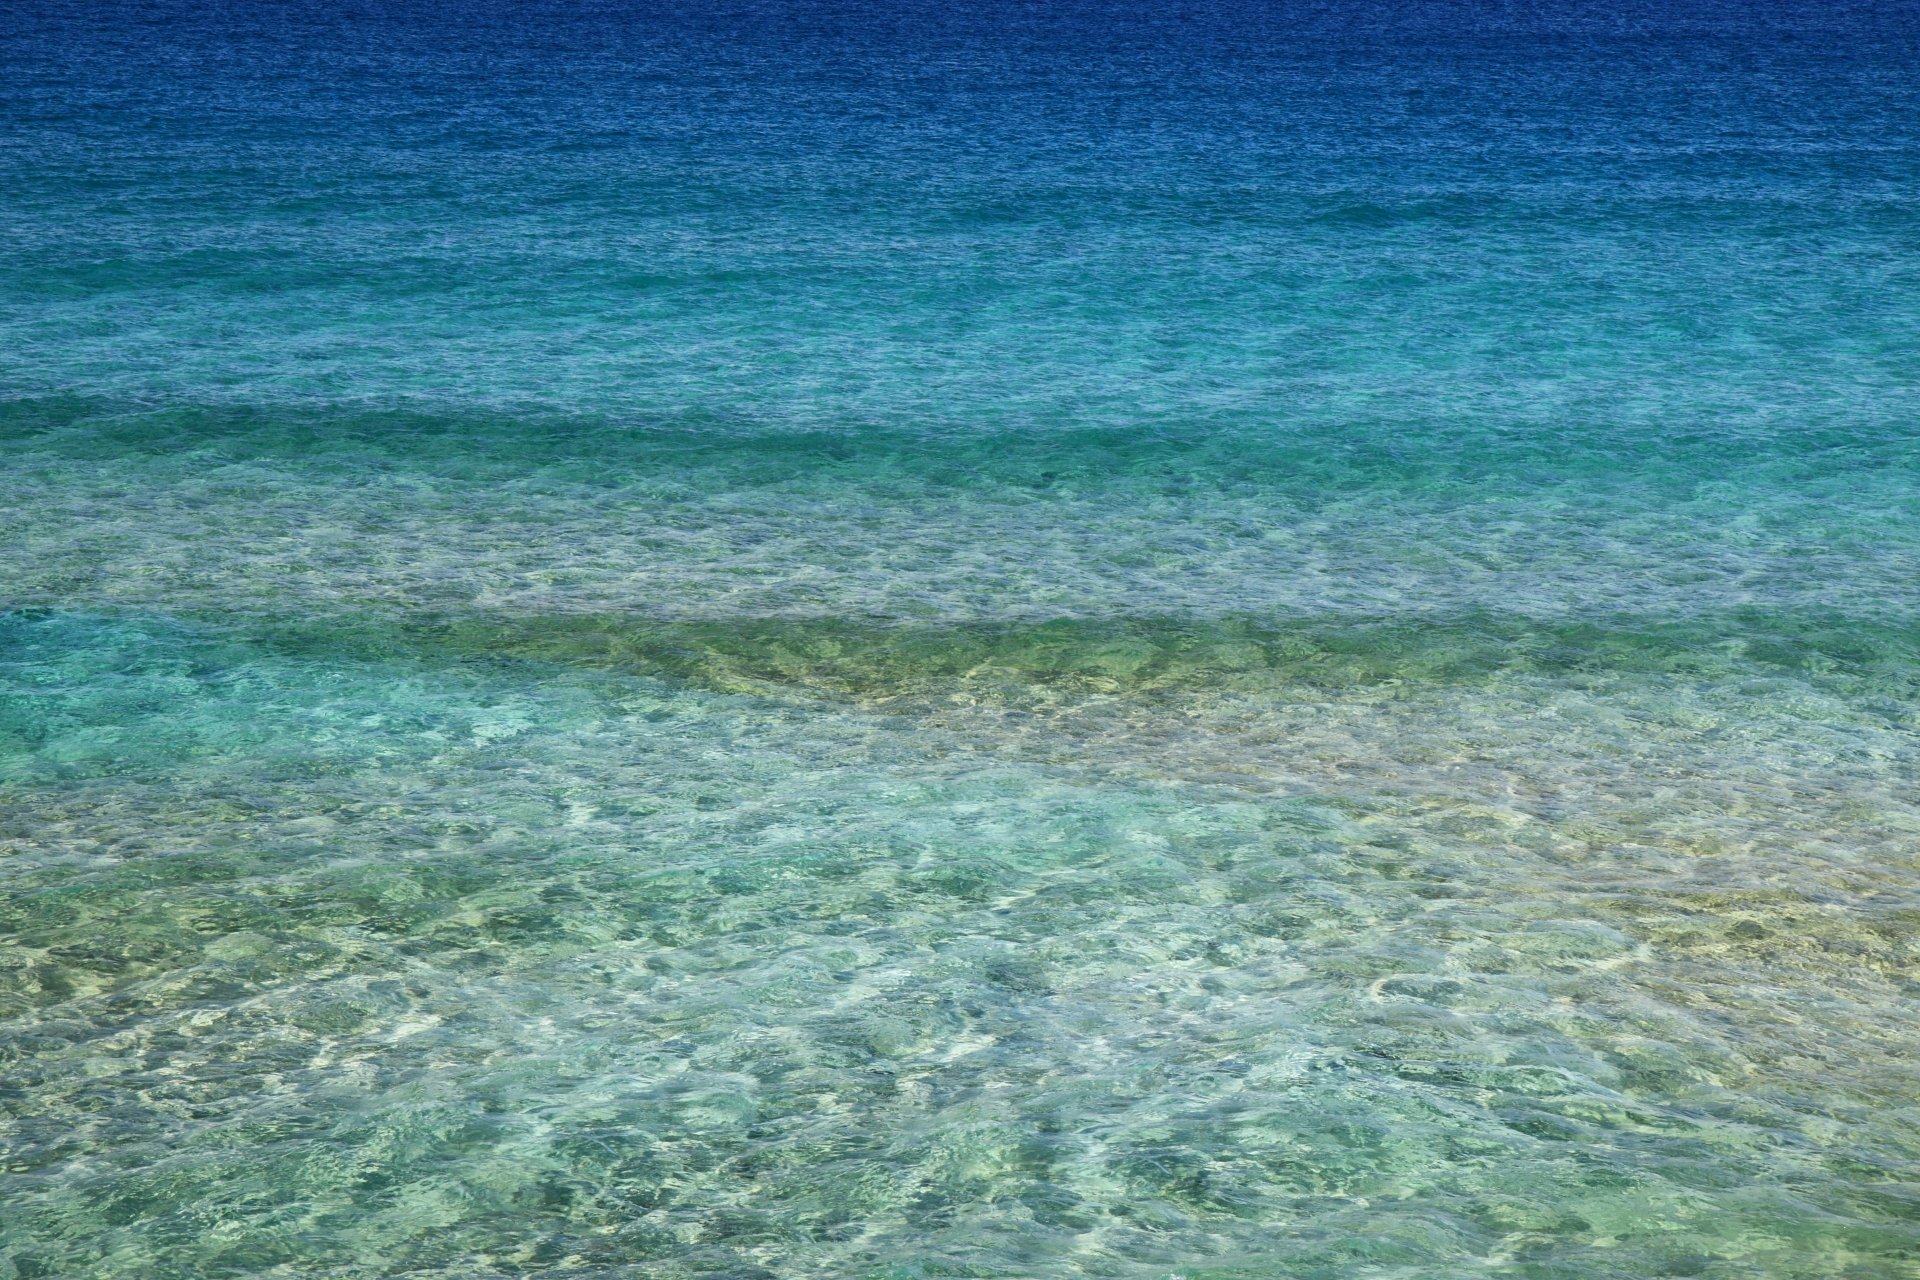 Aqua blue ocean 4k Ultra HD Wallpaper | Background Image | 4752x3168